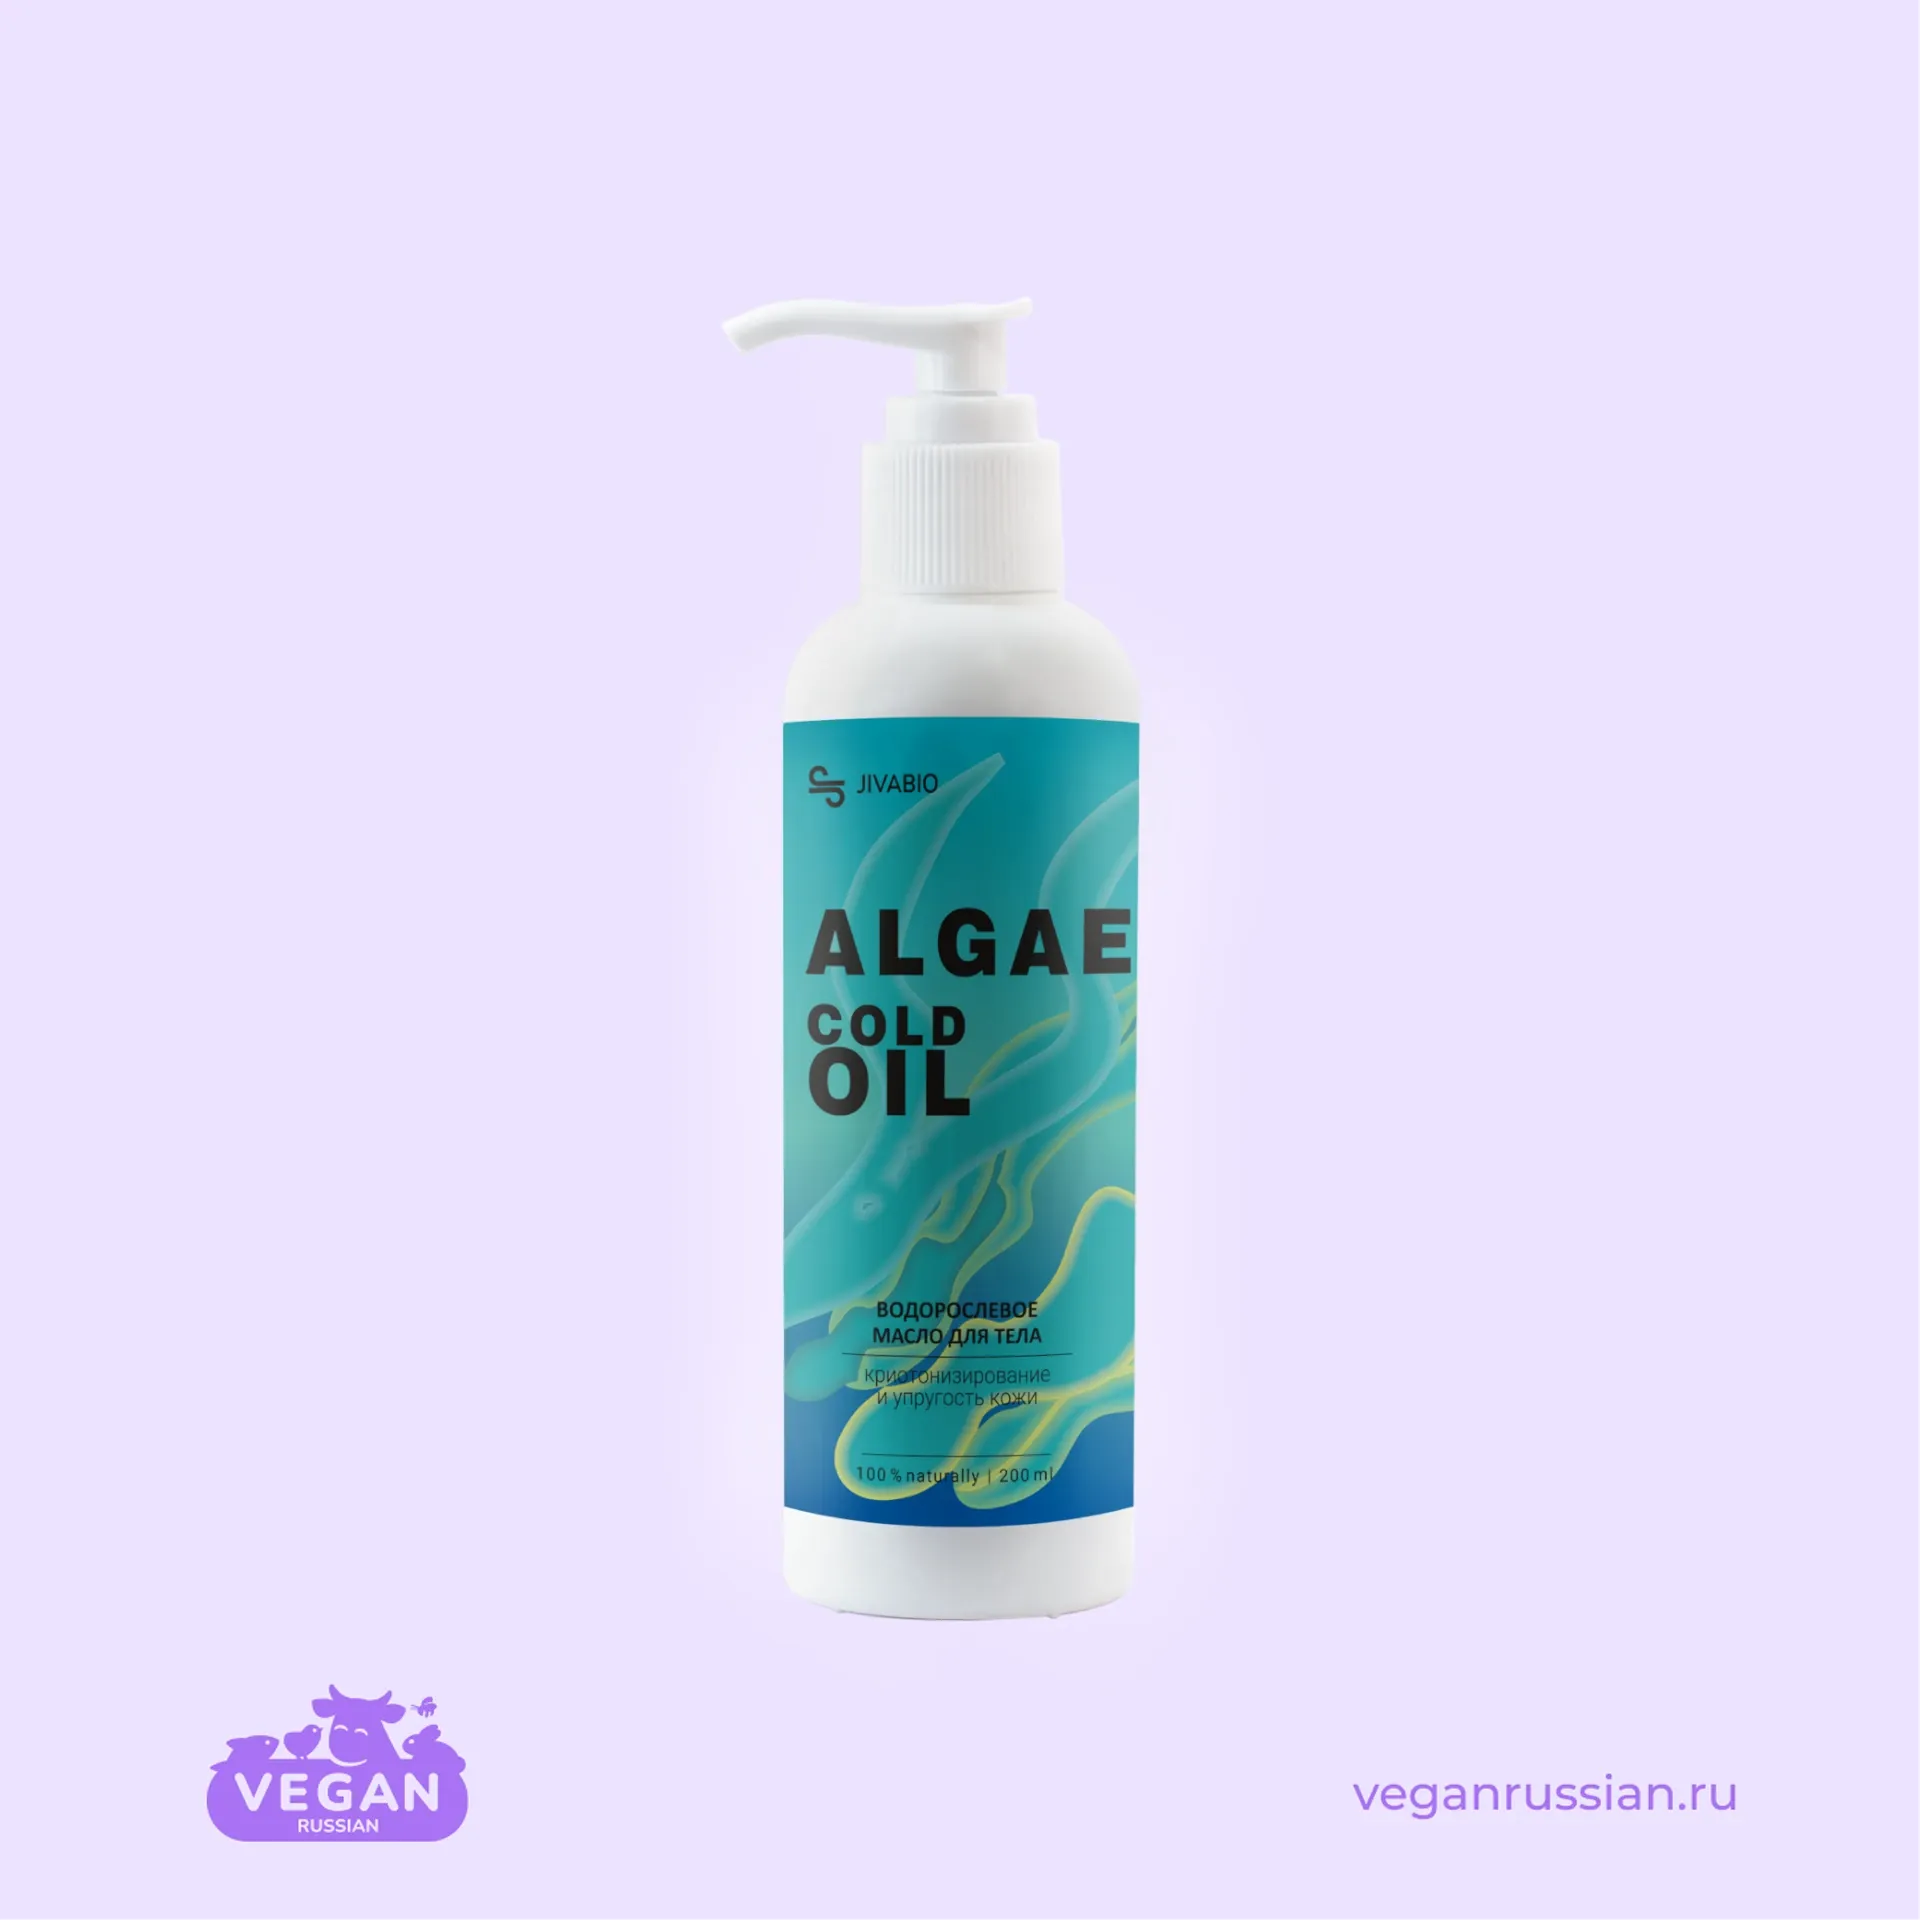 Водорослевое масло для тела Algae Cold Oil Jivabio 200 мл